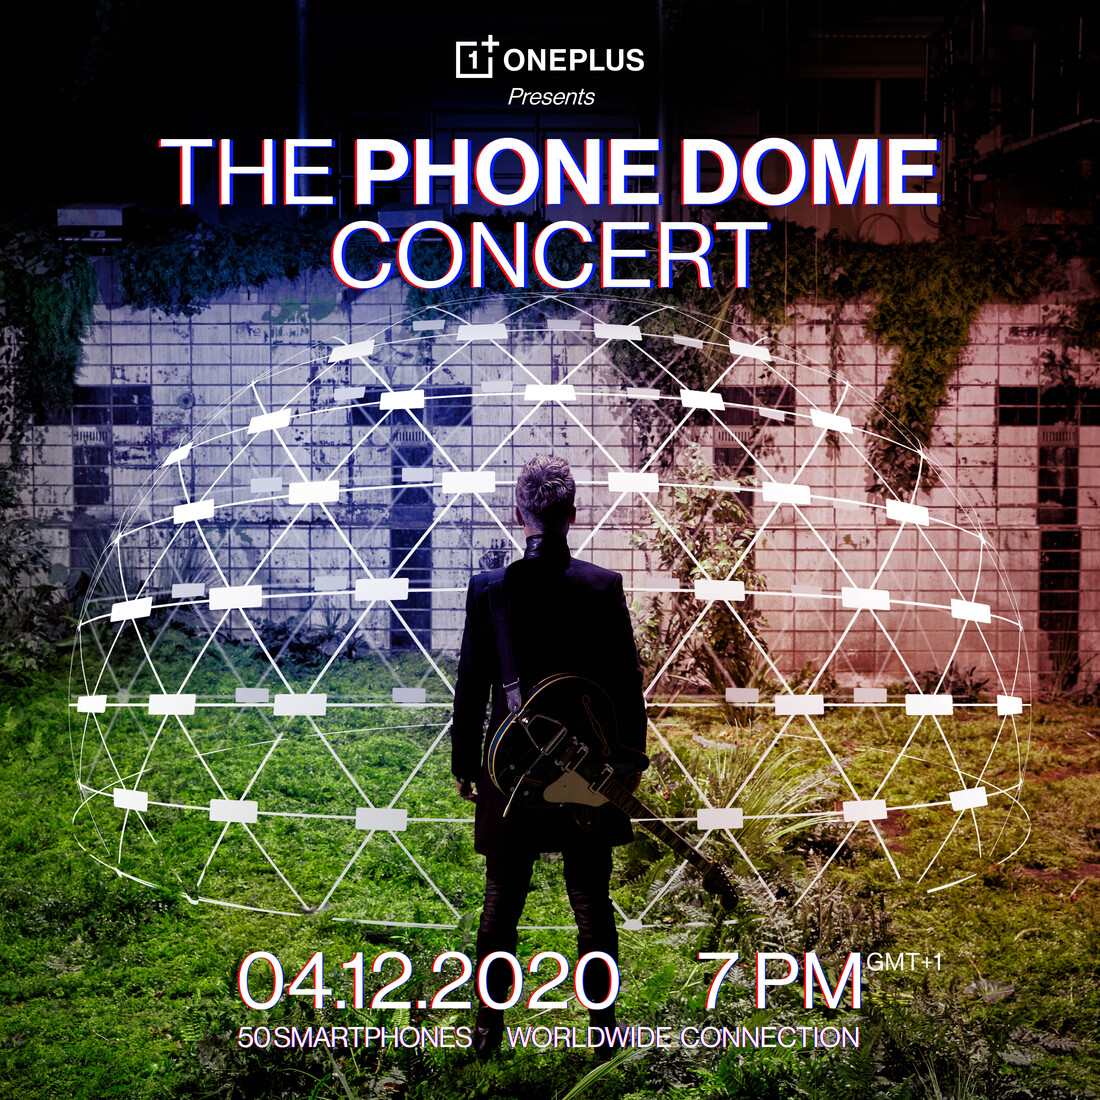 Μια εικονική συναυλία που φιλοξενείται σε πραγματικό Igloo, κατασκευασμένο από τηλέφωνα OnePlus